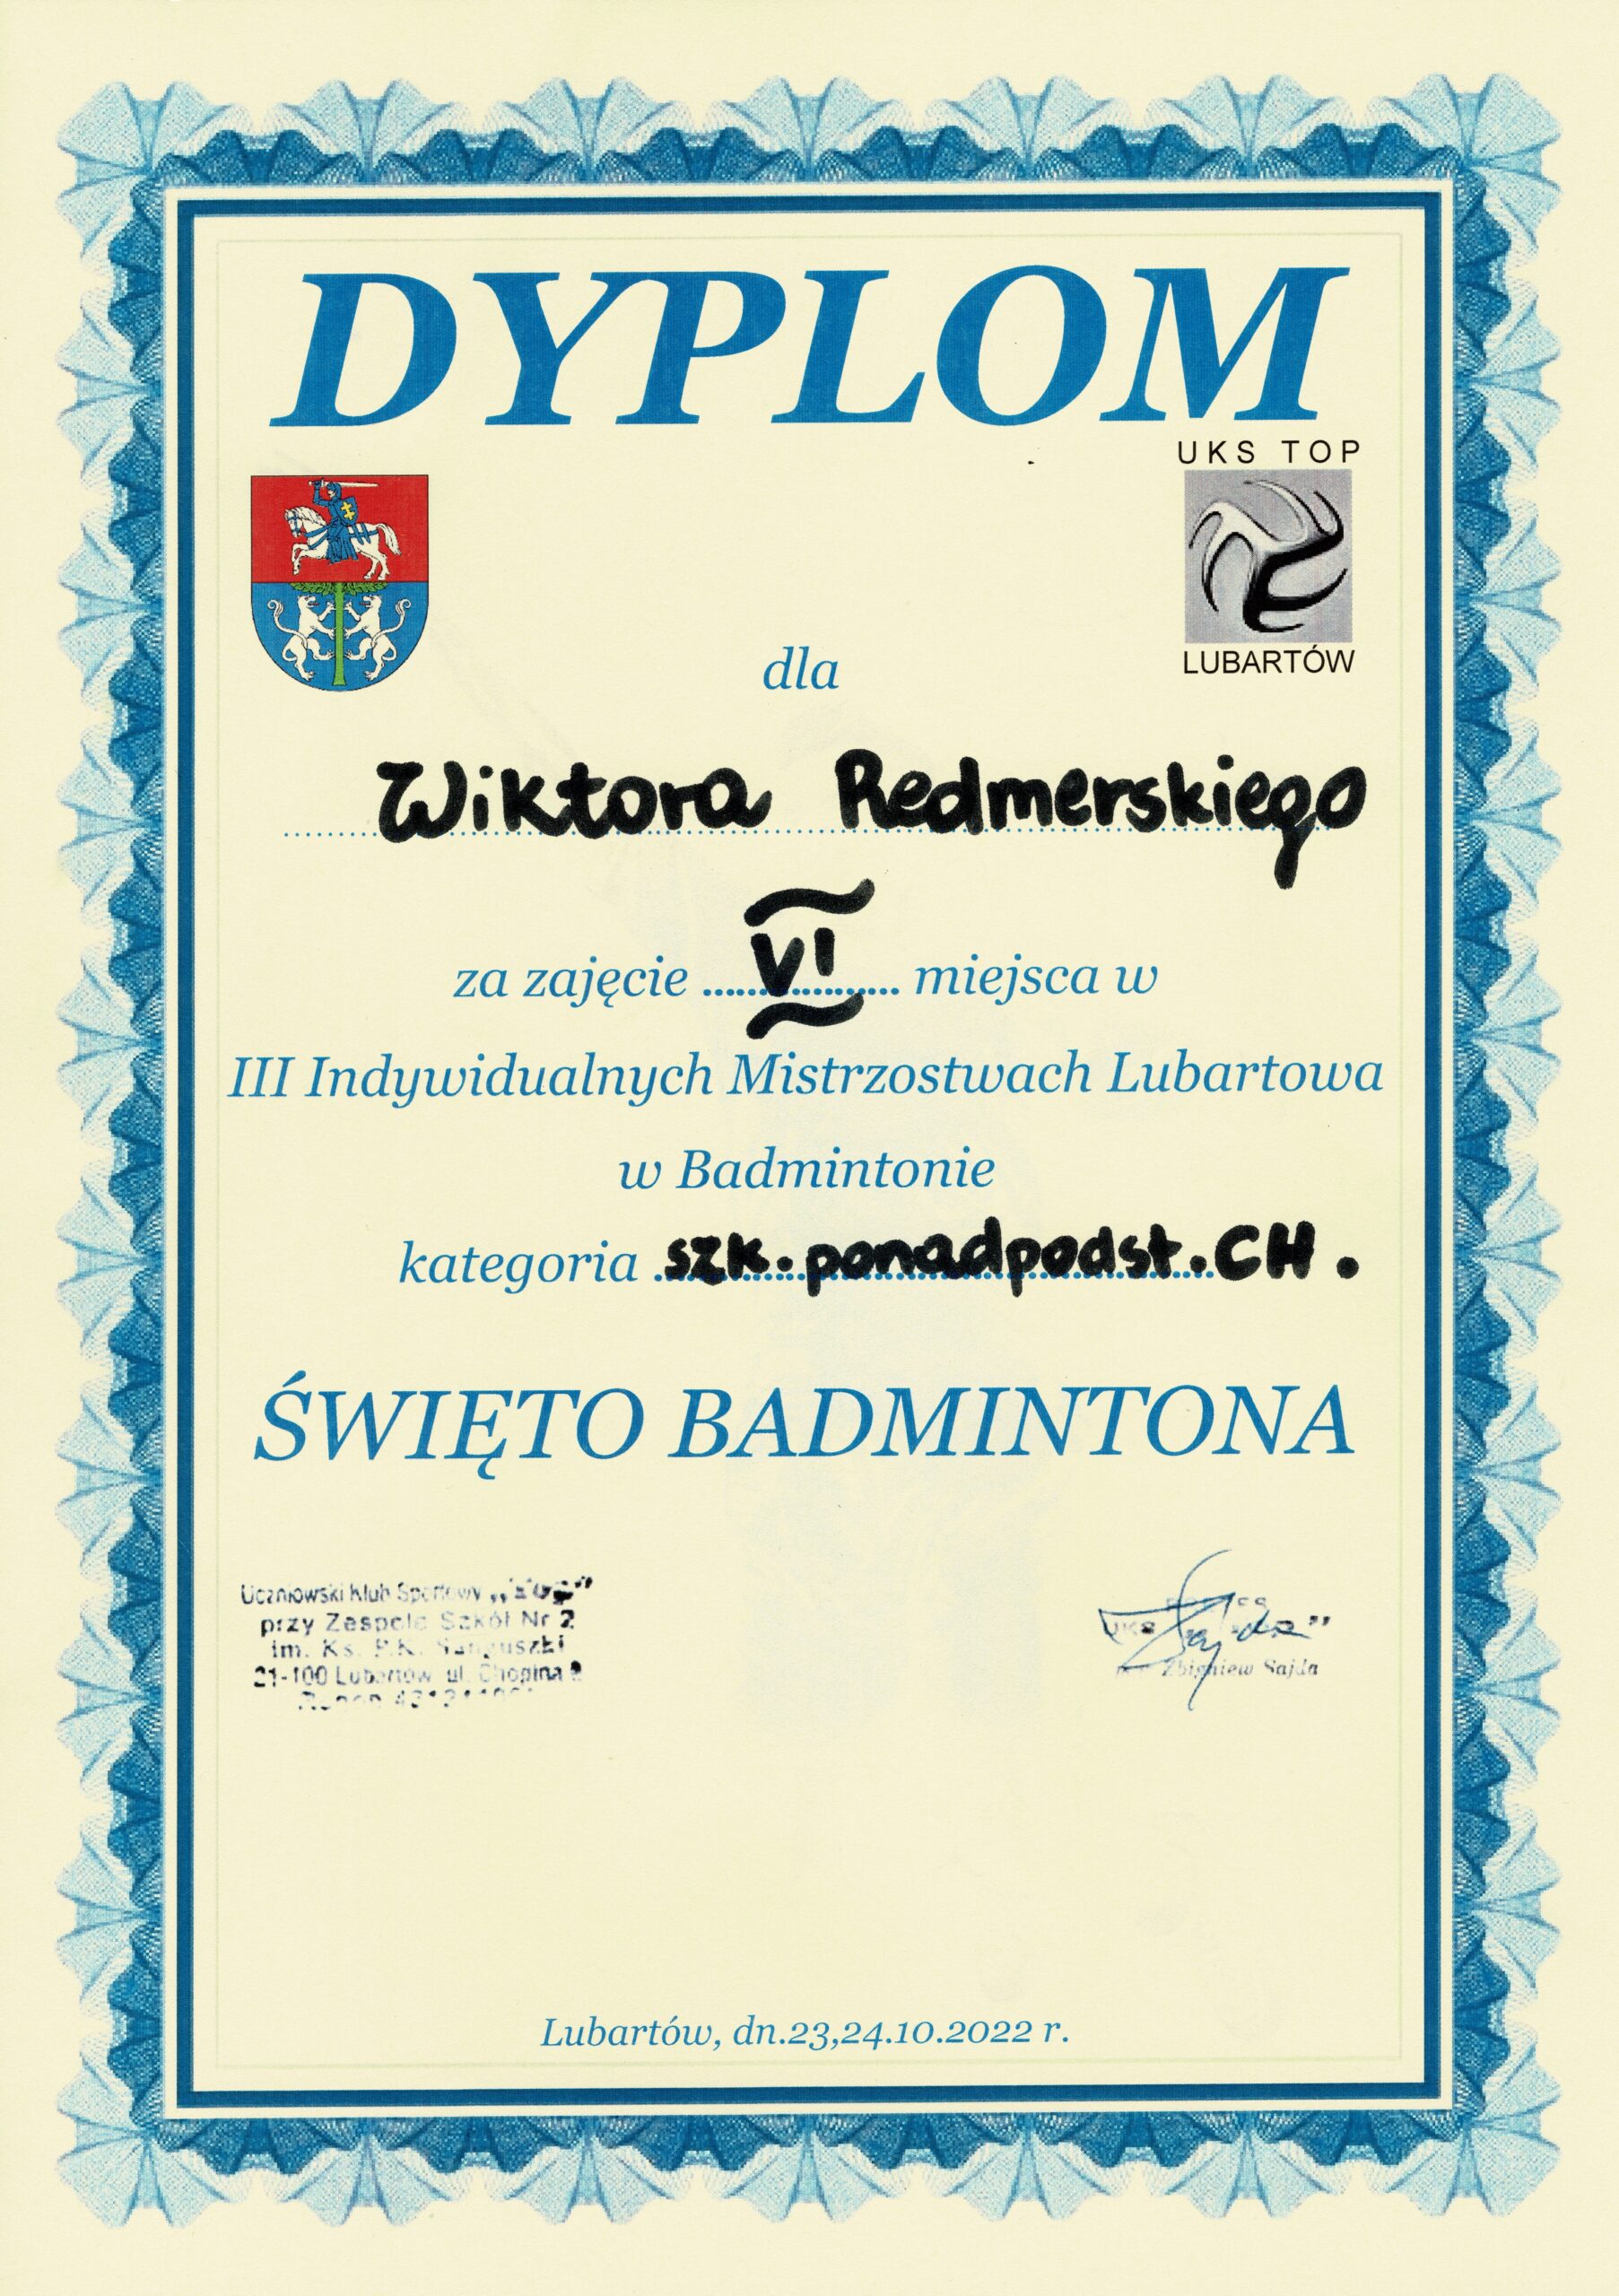 VI Miejsce Wiktro Rademerski III Indywidualnych Mistrzostwach Lubartowa Dzieci, Młodzieży i Dorosłych w Badmintonie.